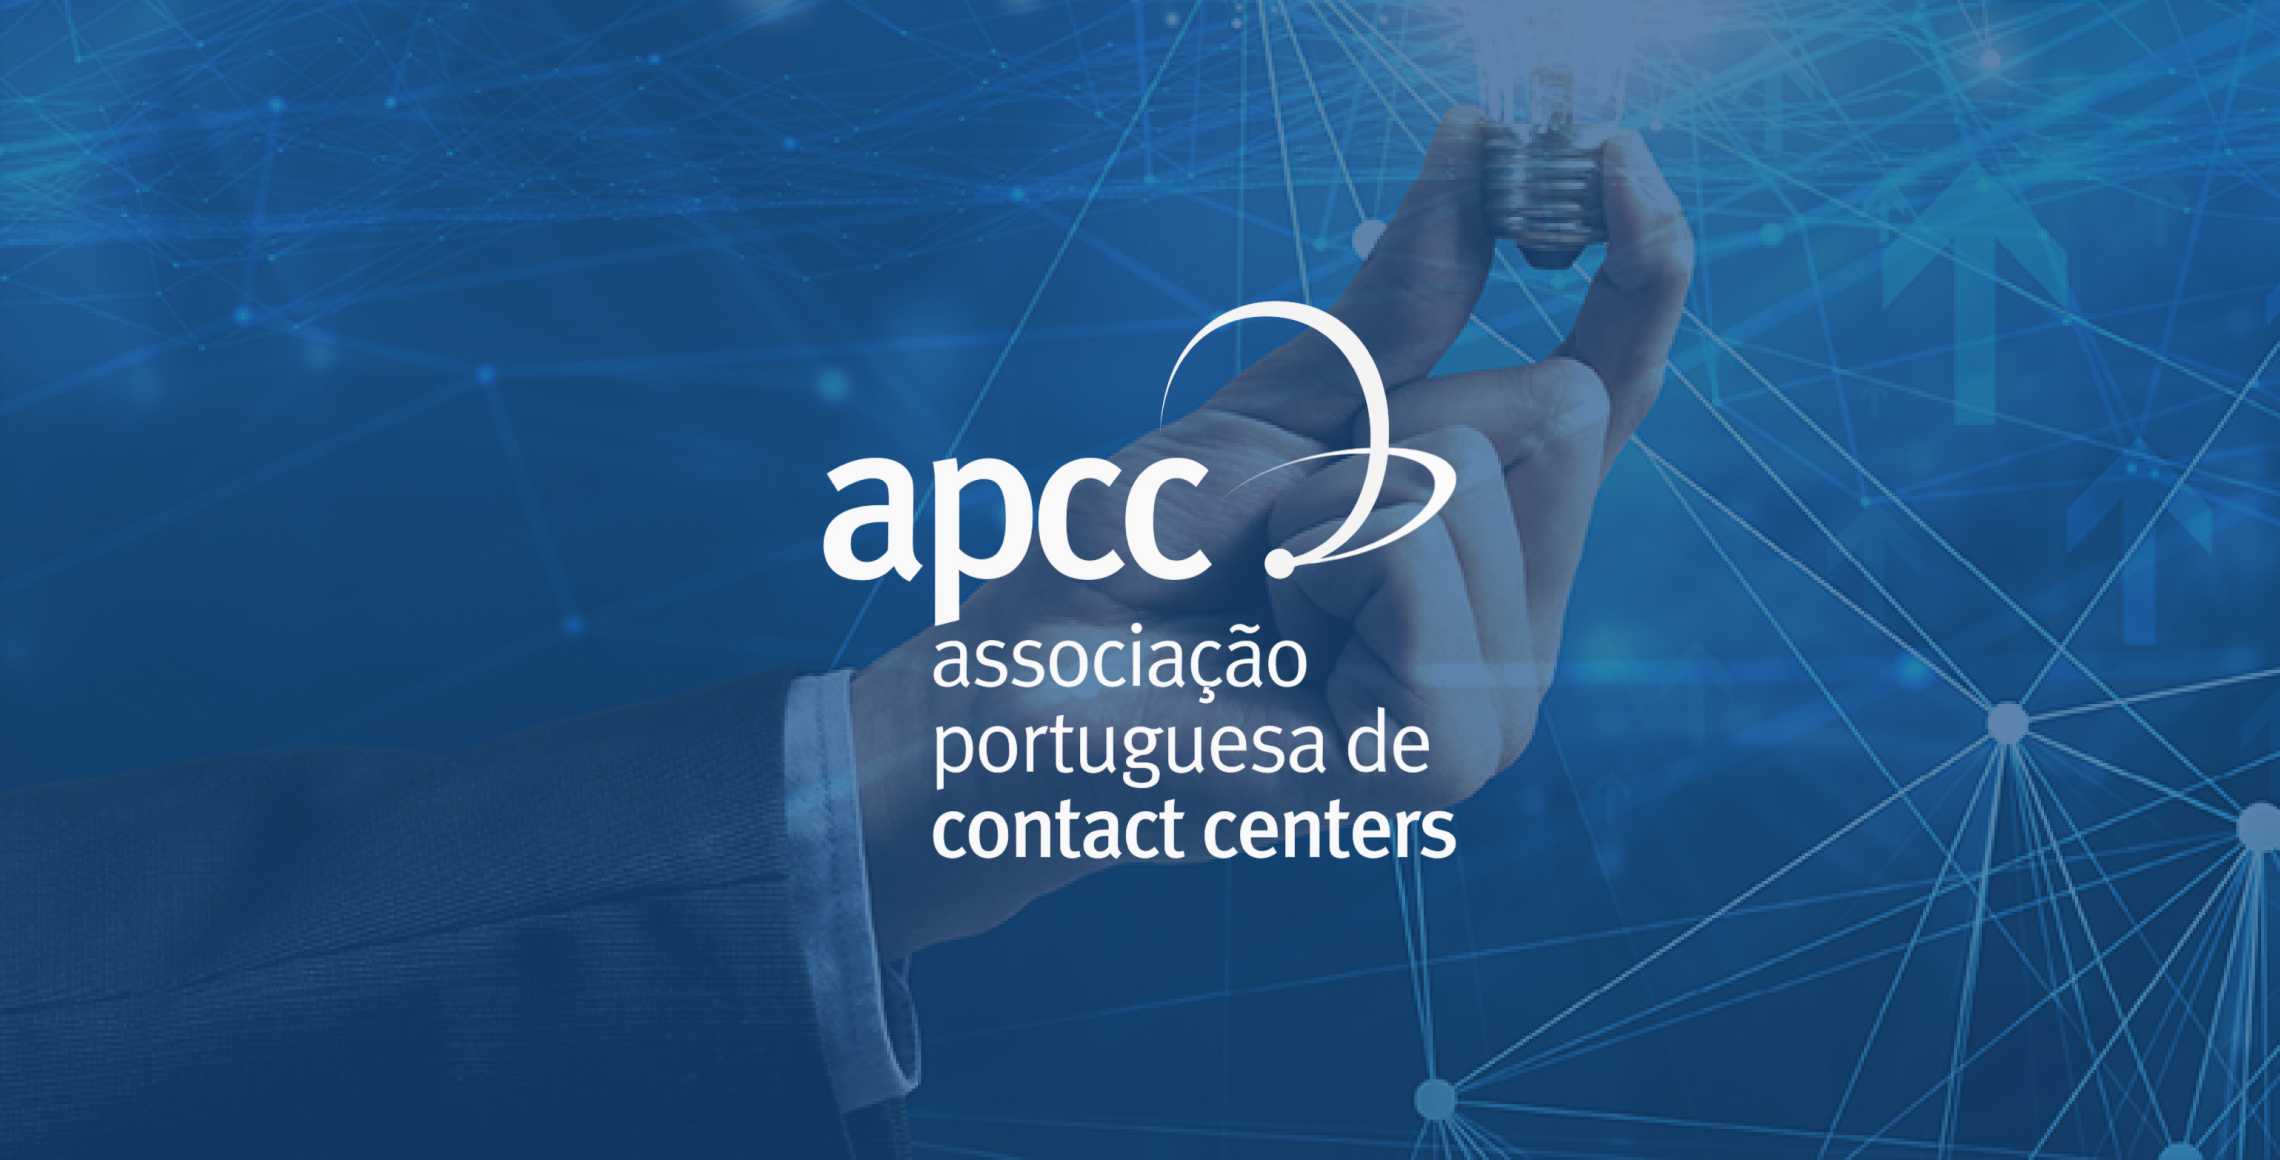 Apcc Conference In Porto With Talkdesk